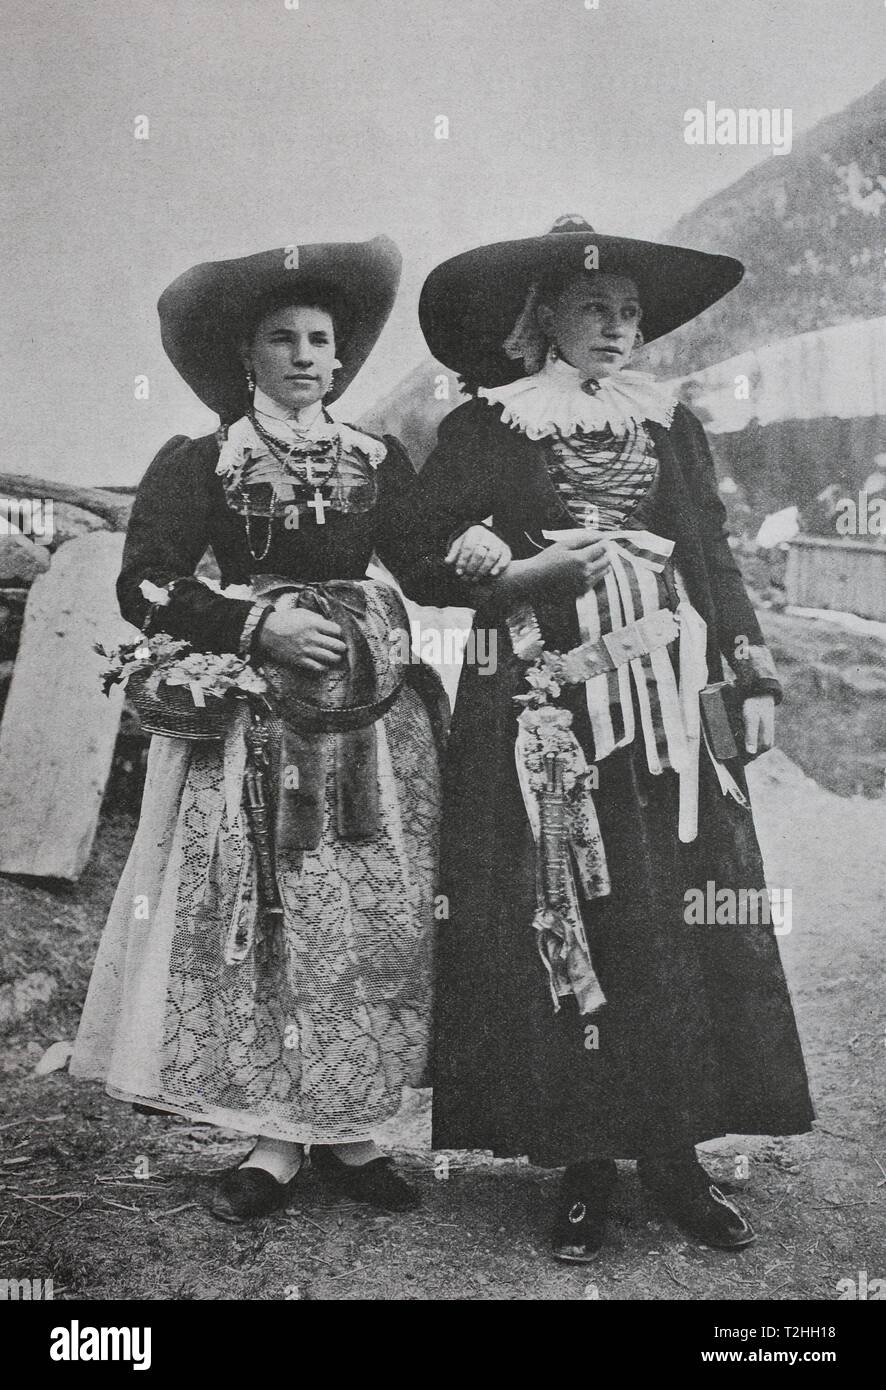 Sposa e damigella in abito tradizionale della Val Gardena, Grodnertal, Dolomiti del Sud Tirolo, 1895, immagine storica, Italia Foto Stock